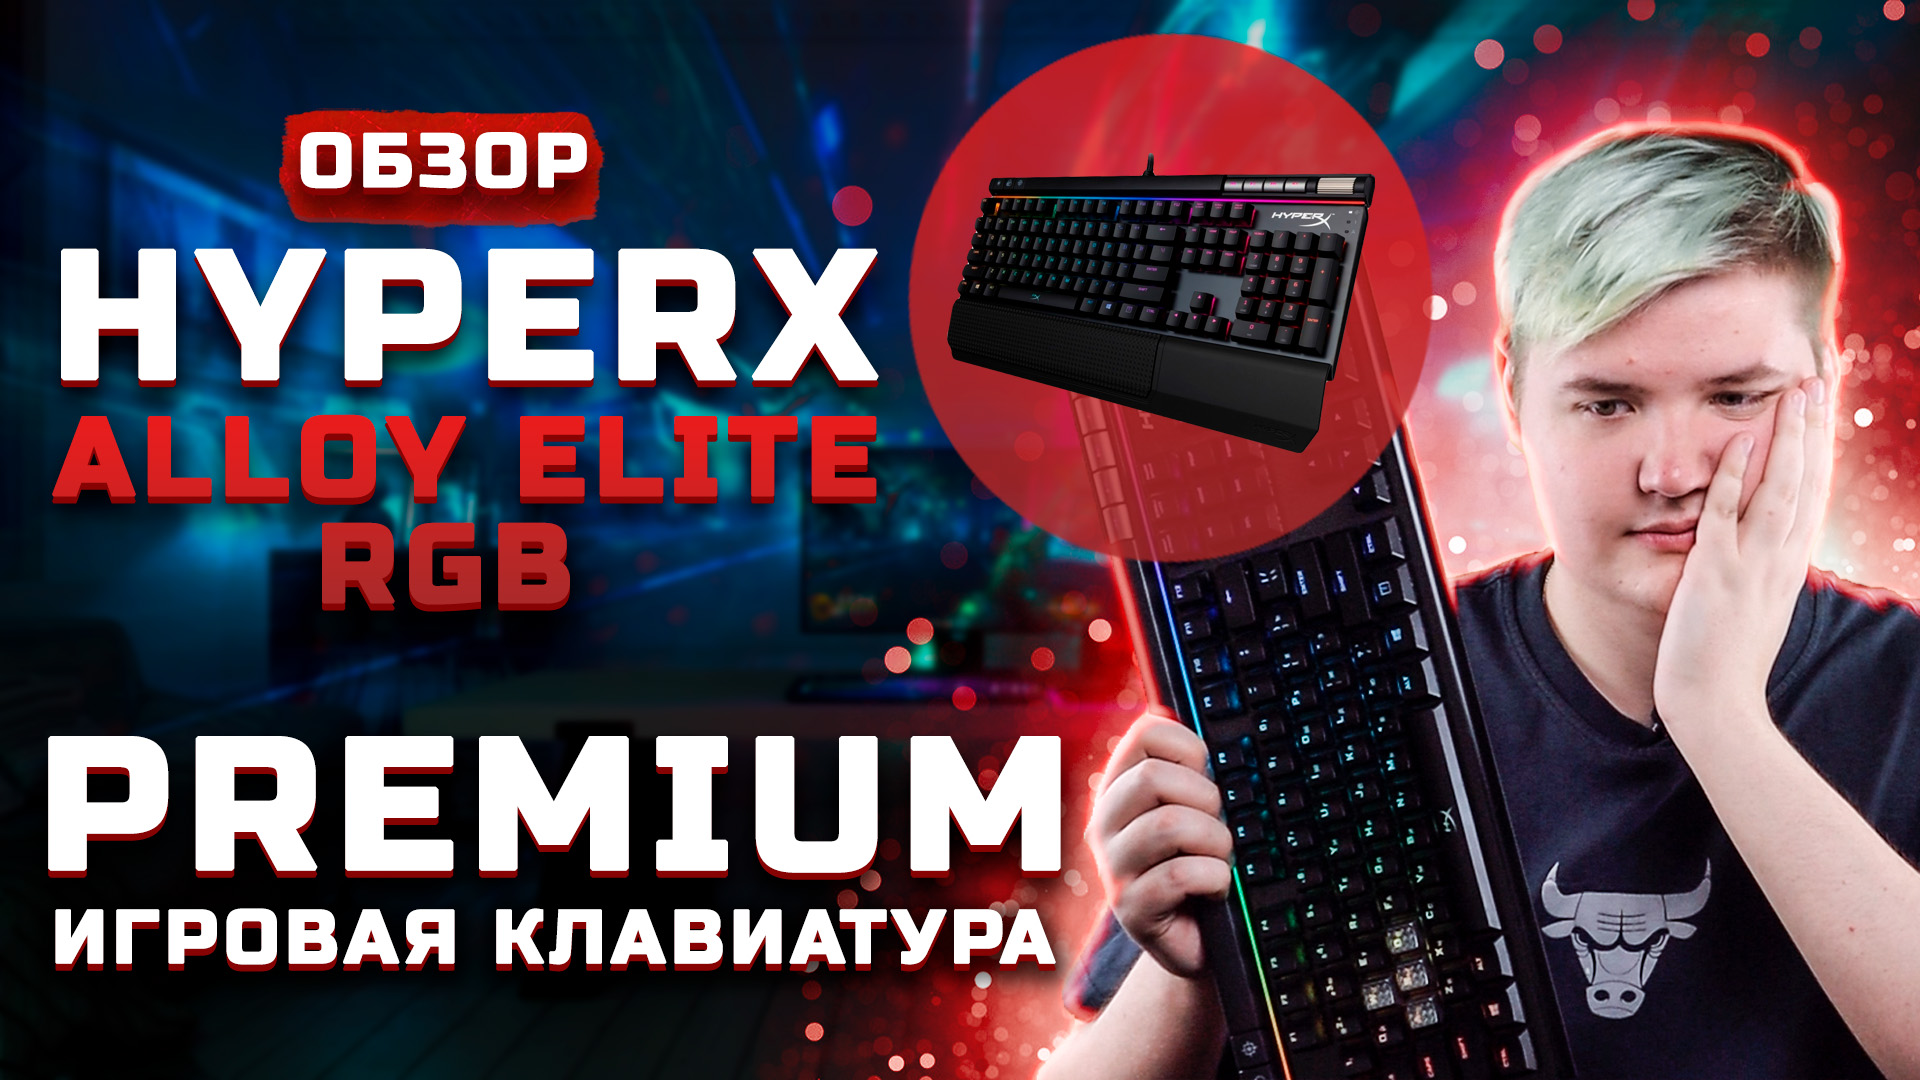 Обзор HyperX Alloy Elite RGB | Игровая PREMIUM клавиатура